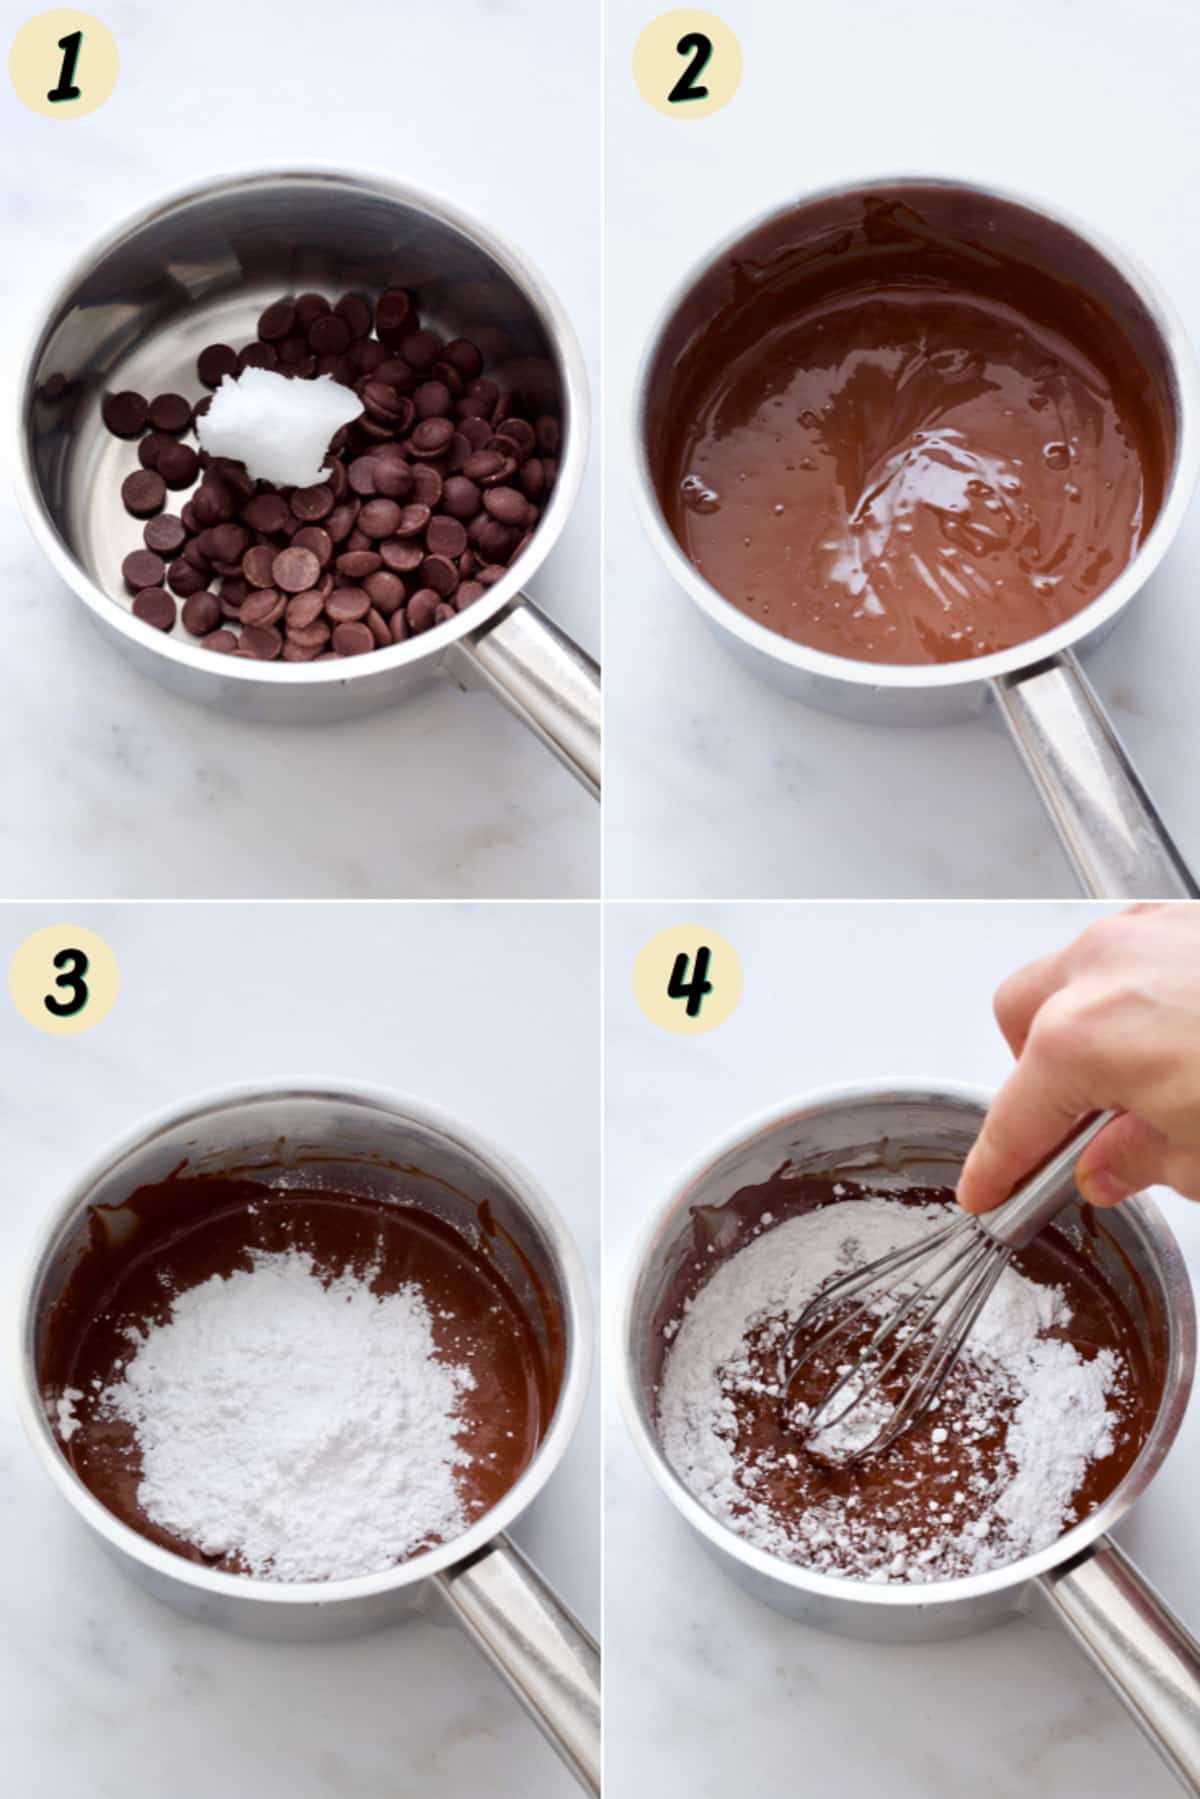 Making chocolate ganache.